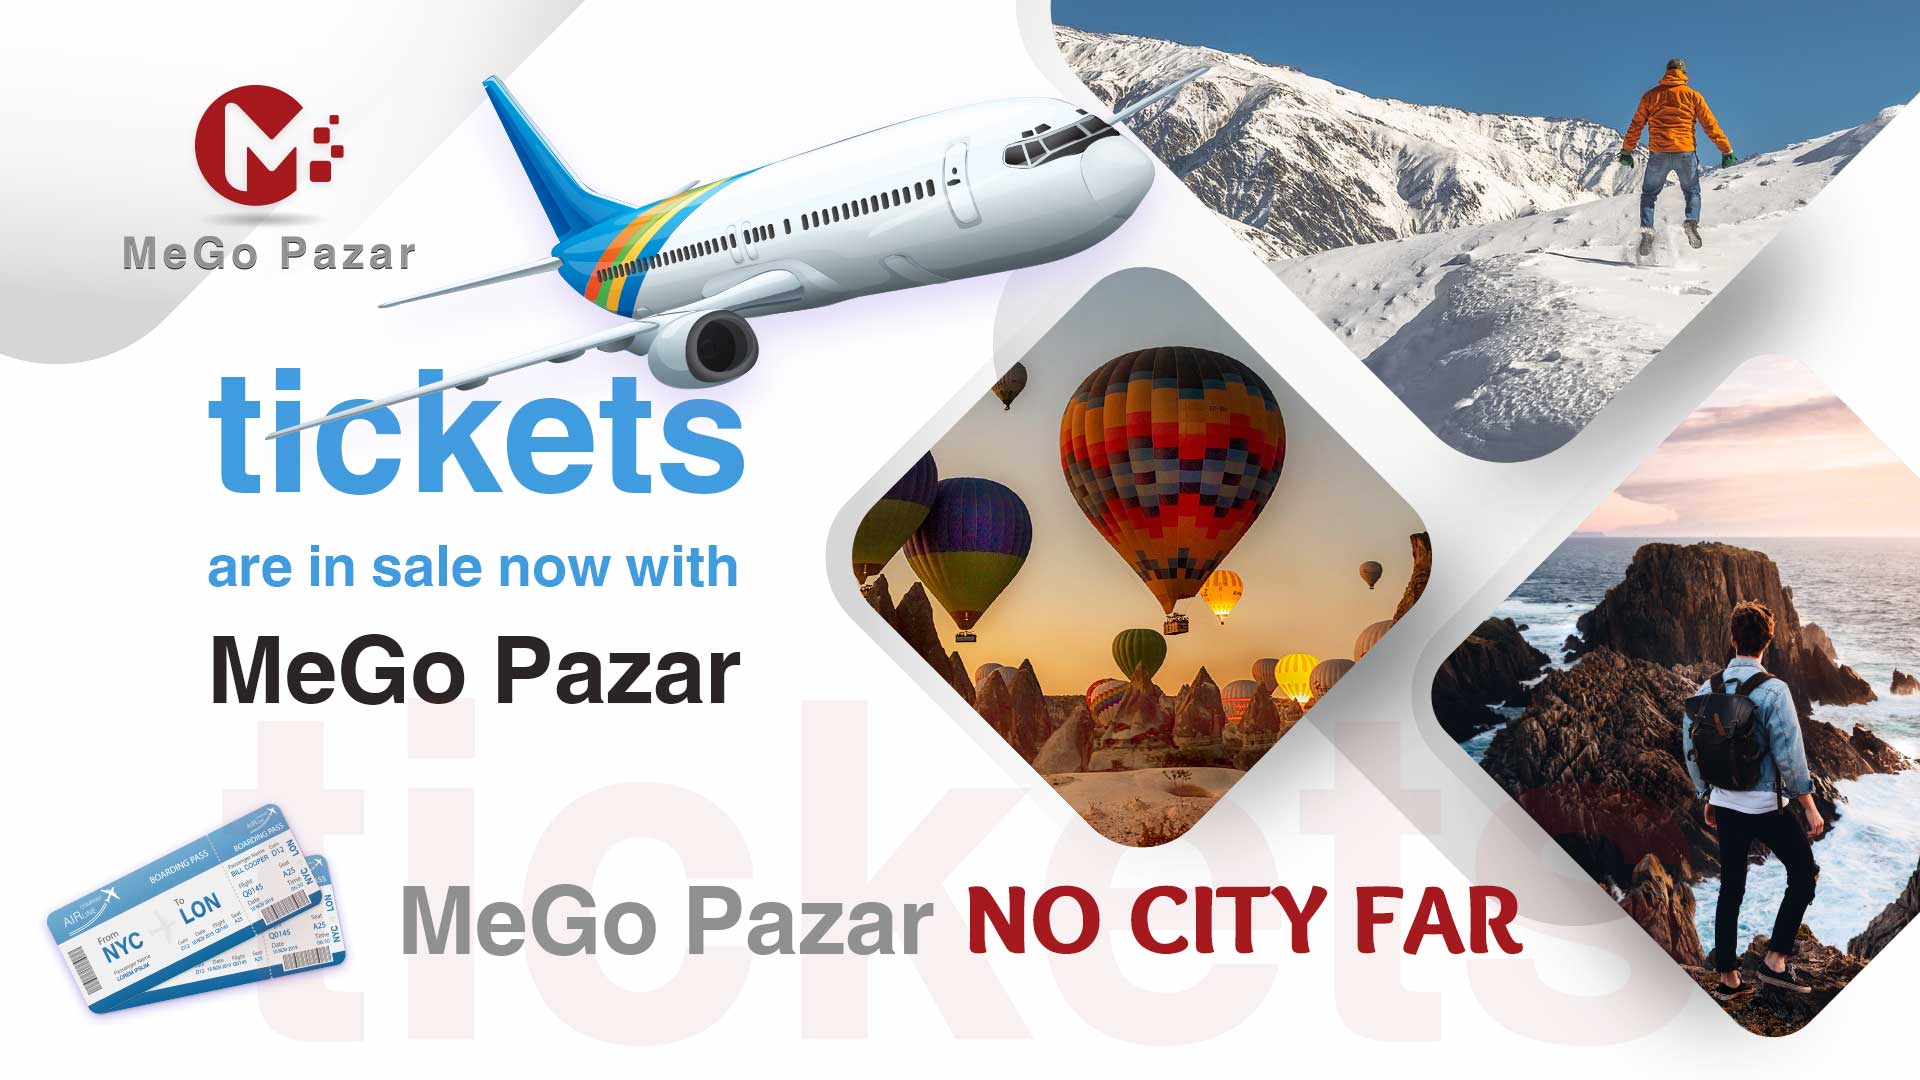 mego travel market